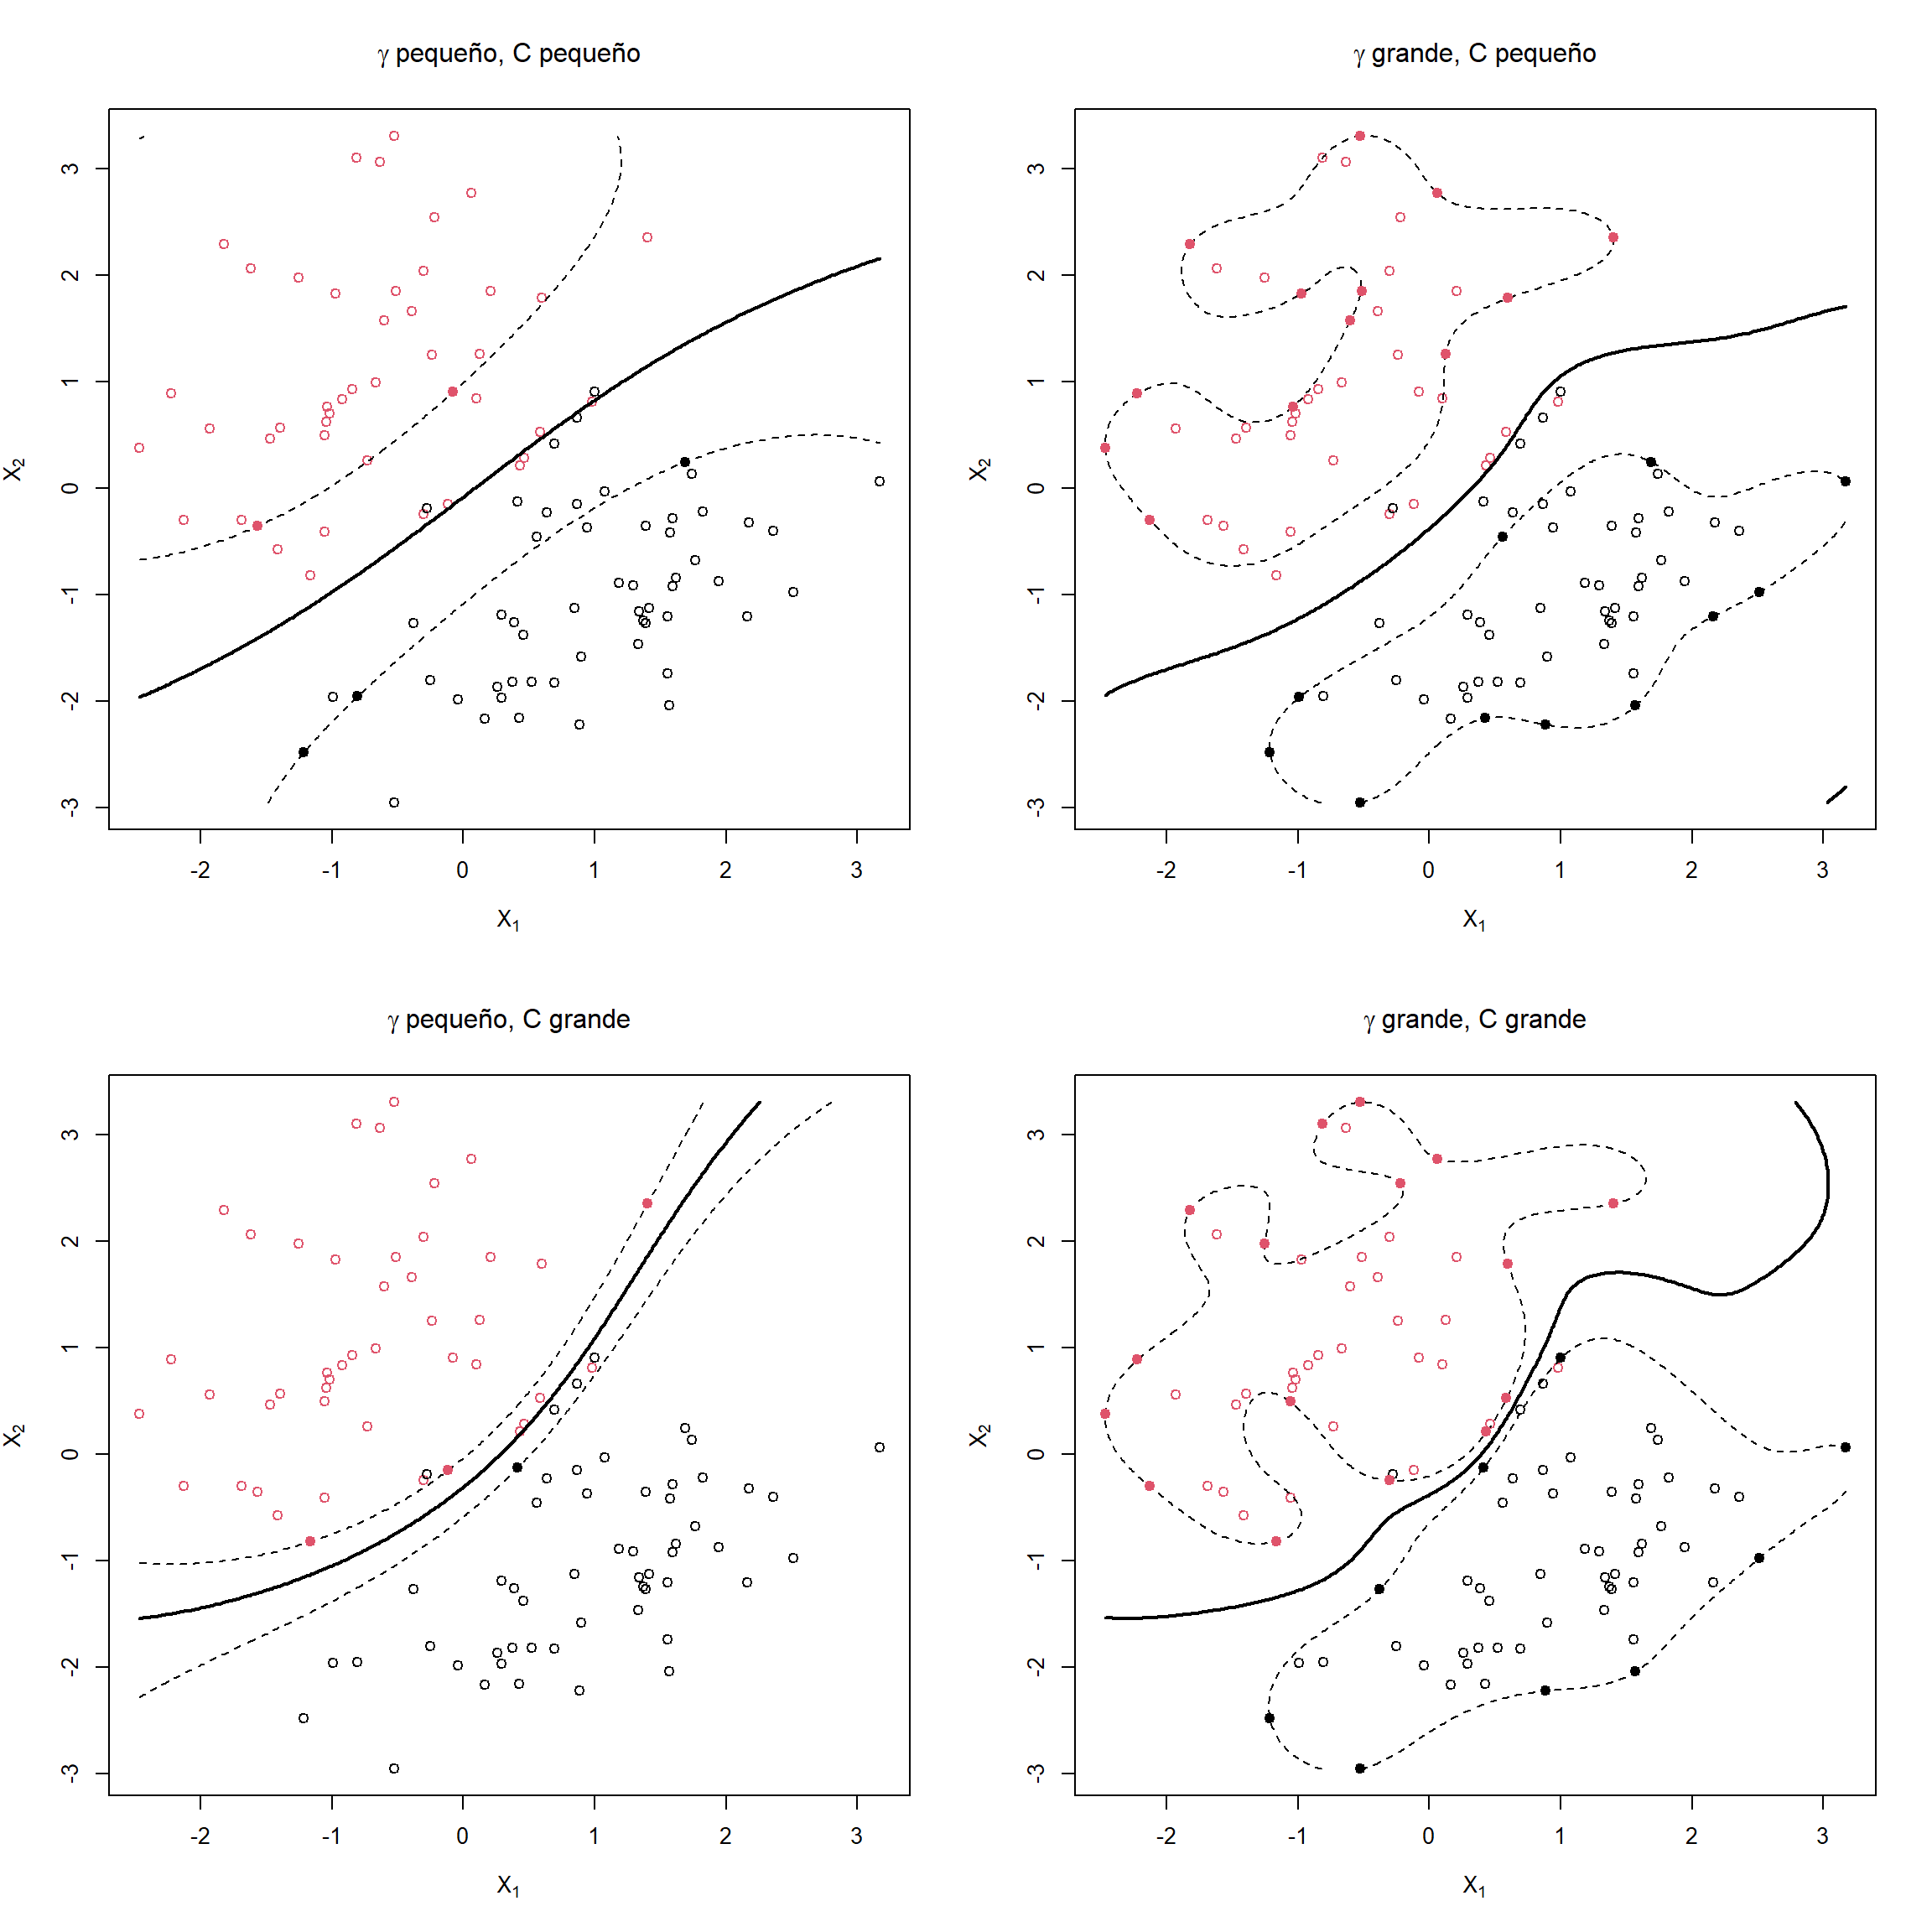 Ejemplos de máquinas de soporte vectorial con diferentes valores de los hiperparámetros (\(\gamma\) inverso de la ventana de la función kernel y coste \(C\)).